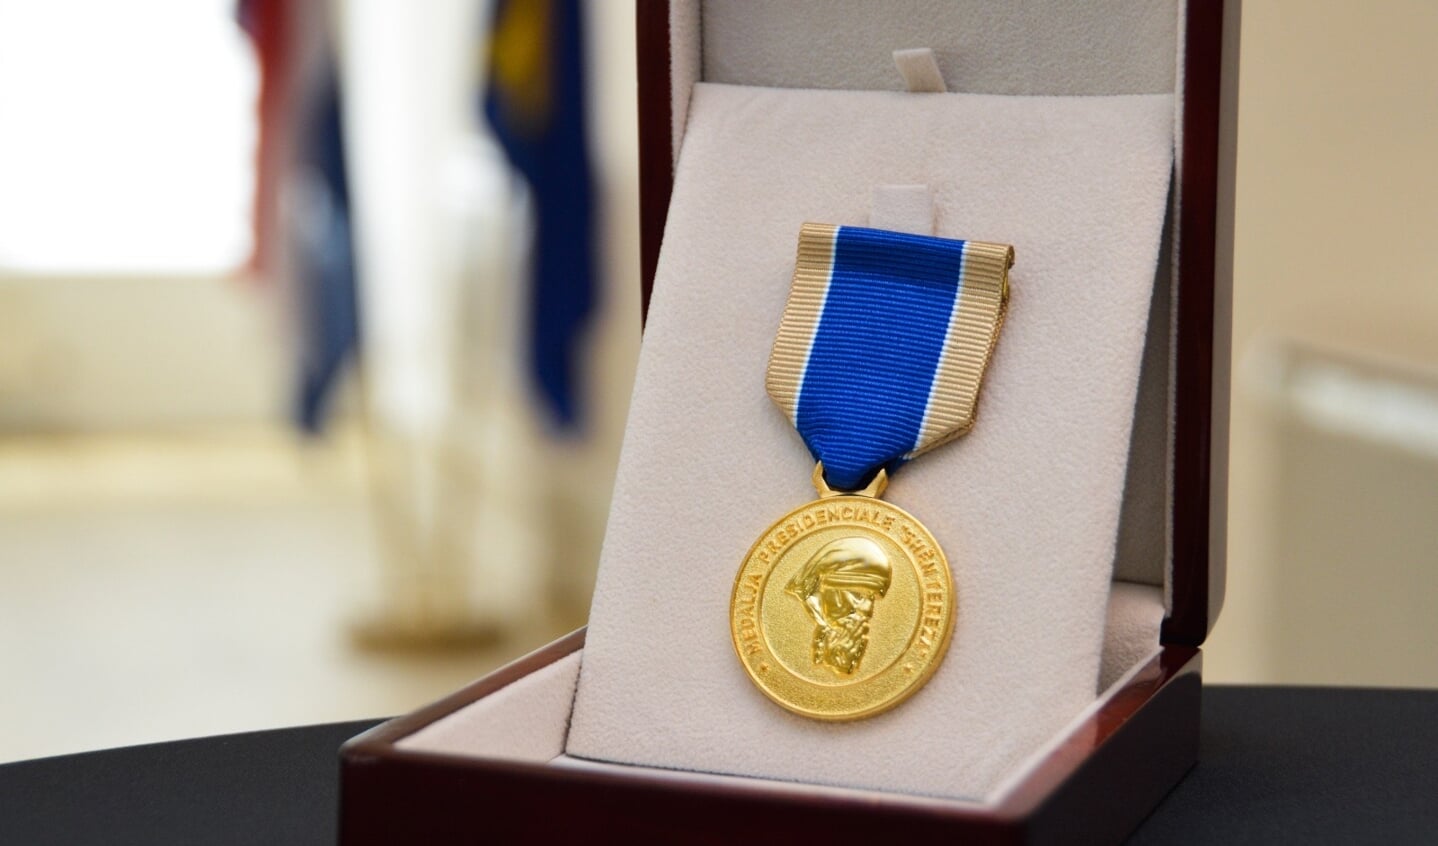 De Kosovaarse presidentiële medaille ‘Moeder Teresa’ 